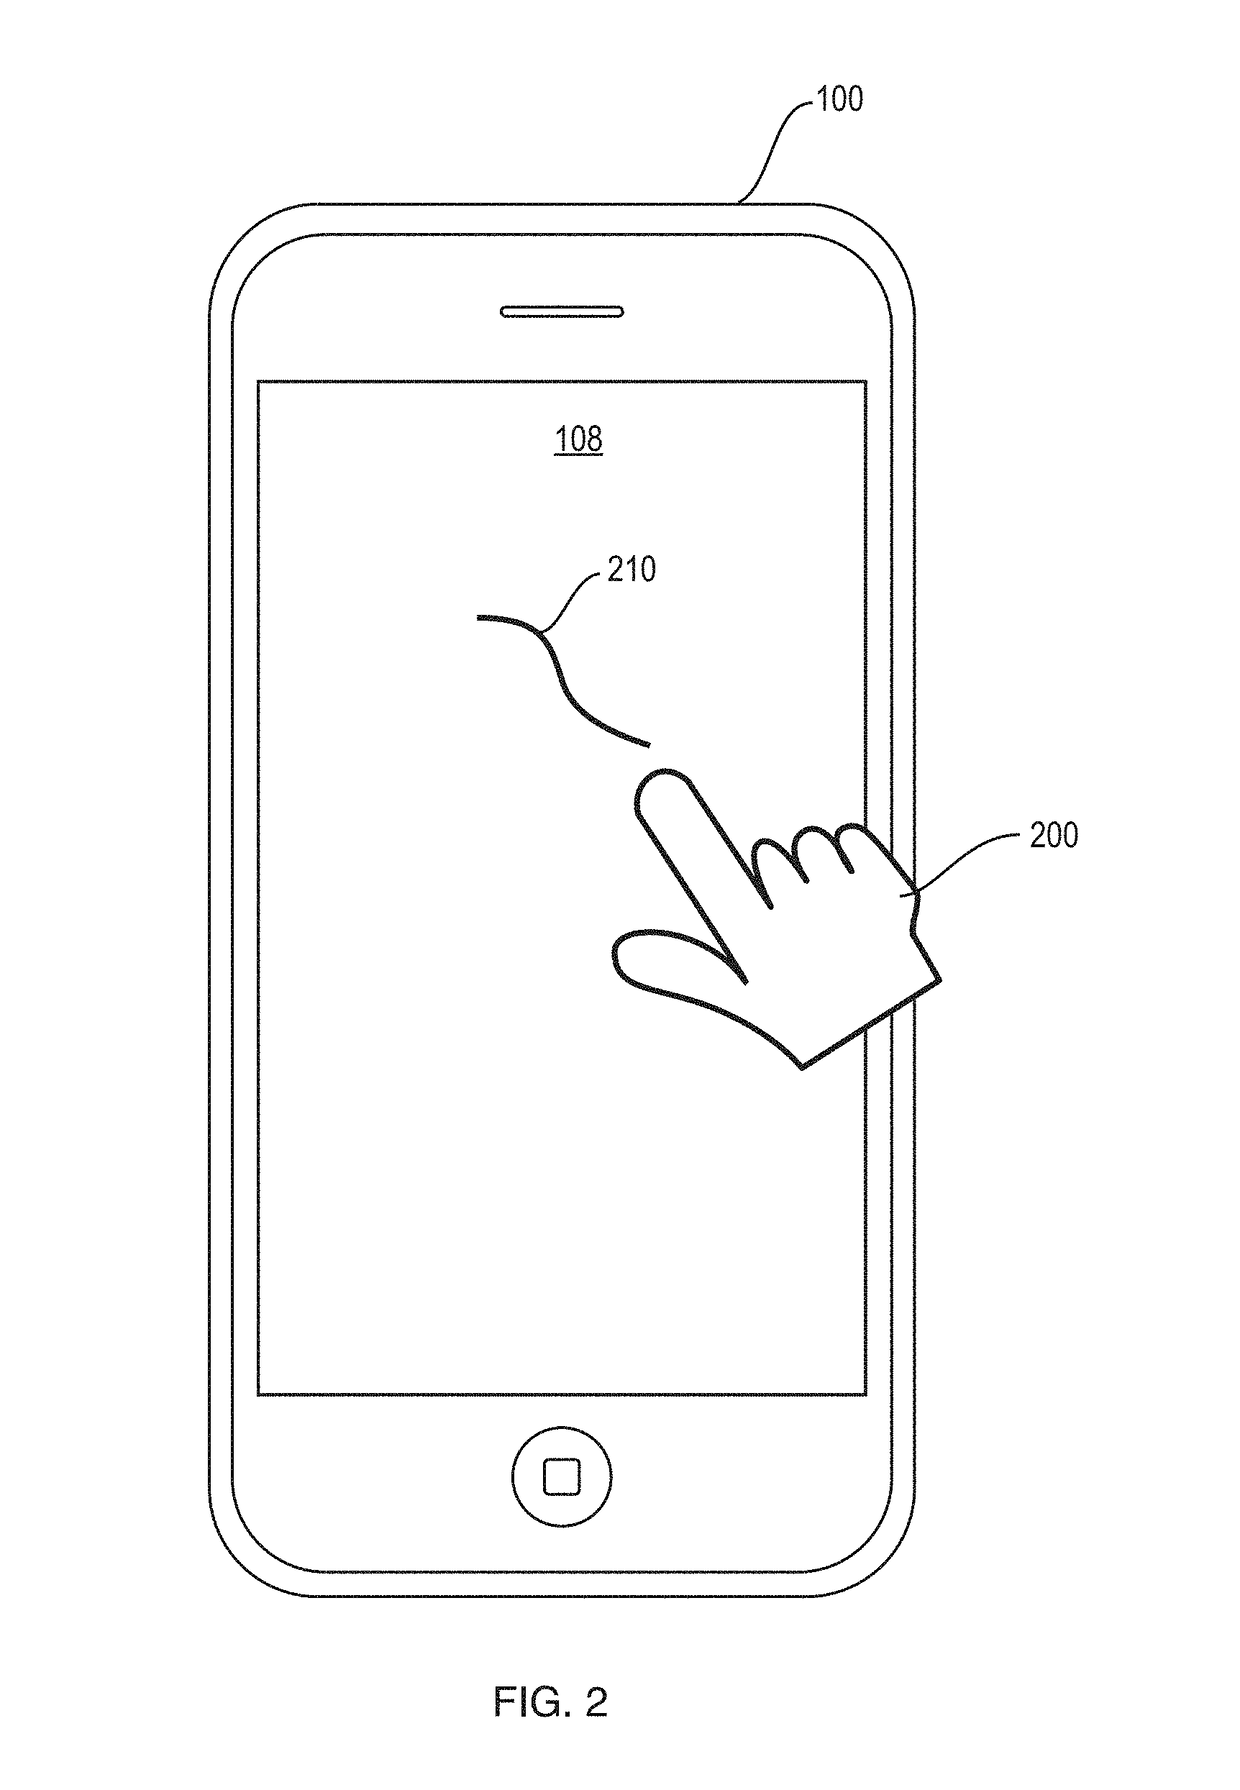 Fingerprint based smart phone user verification